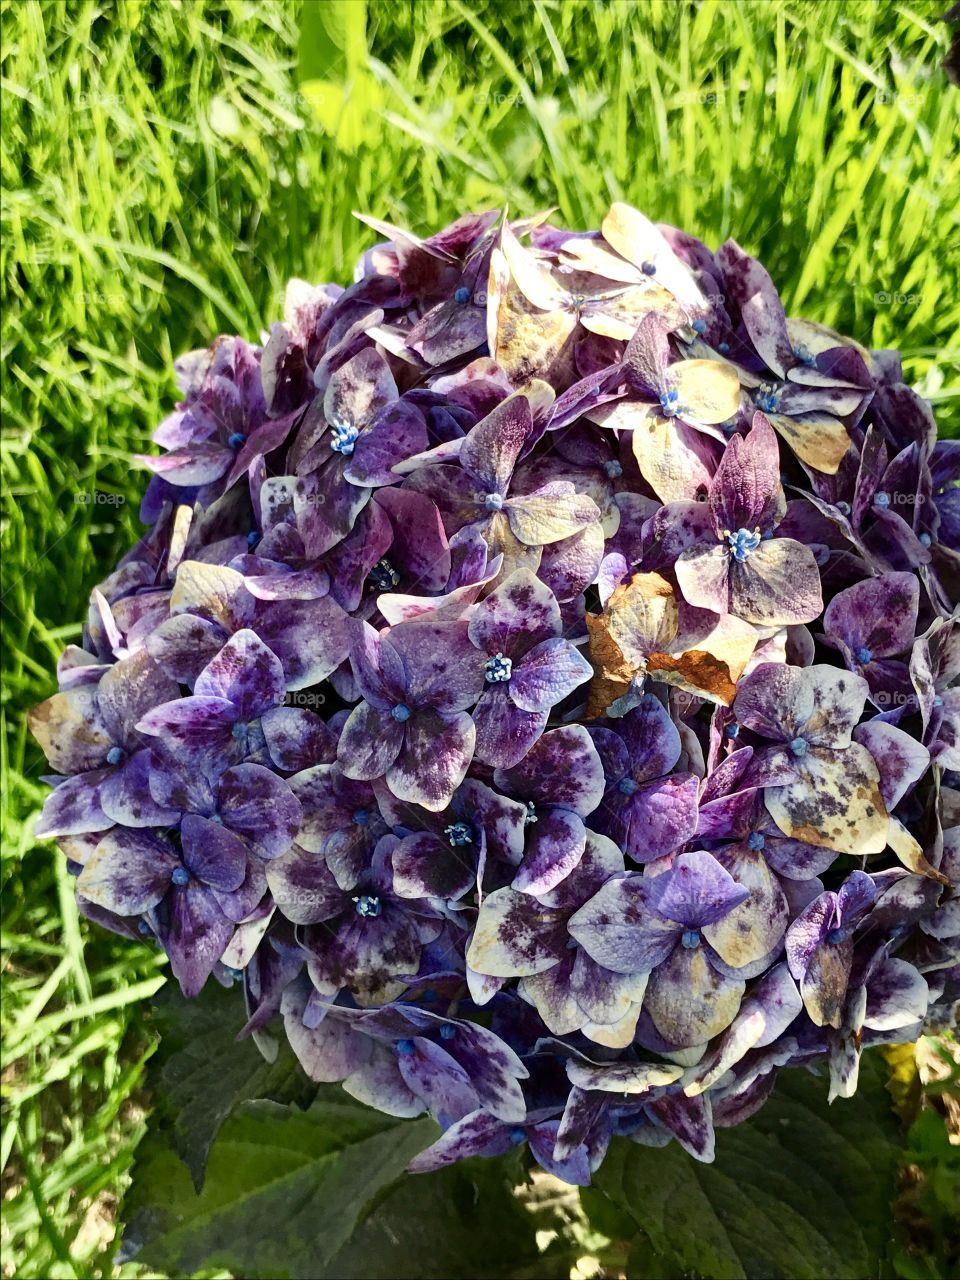 Flower
Purple 
Beautiful 
